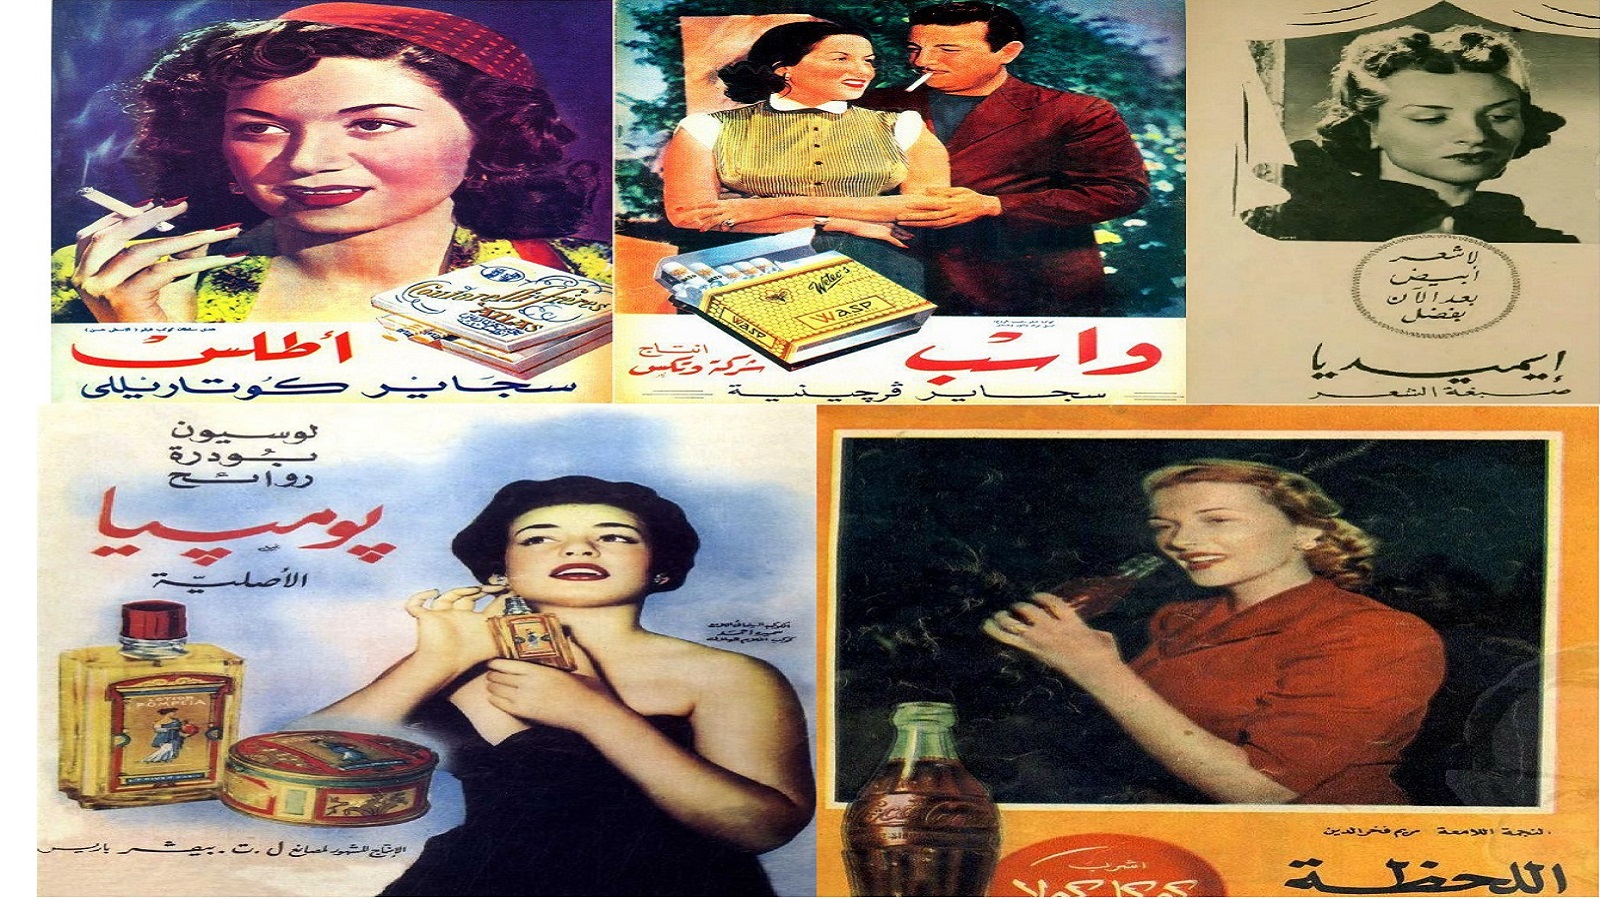 الإغراء العربي في صوره المتعدّدة... في مديح نساء الإعلانات